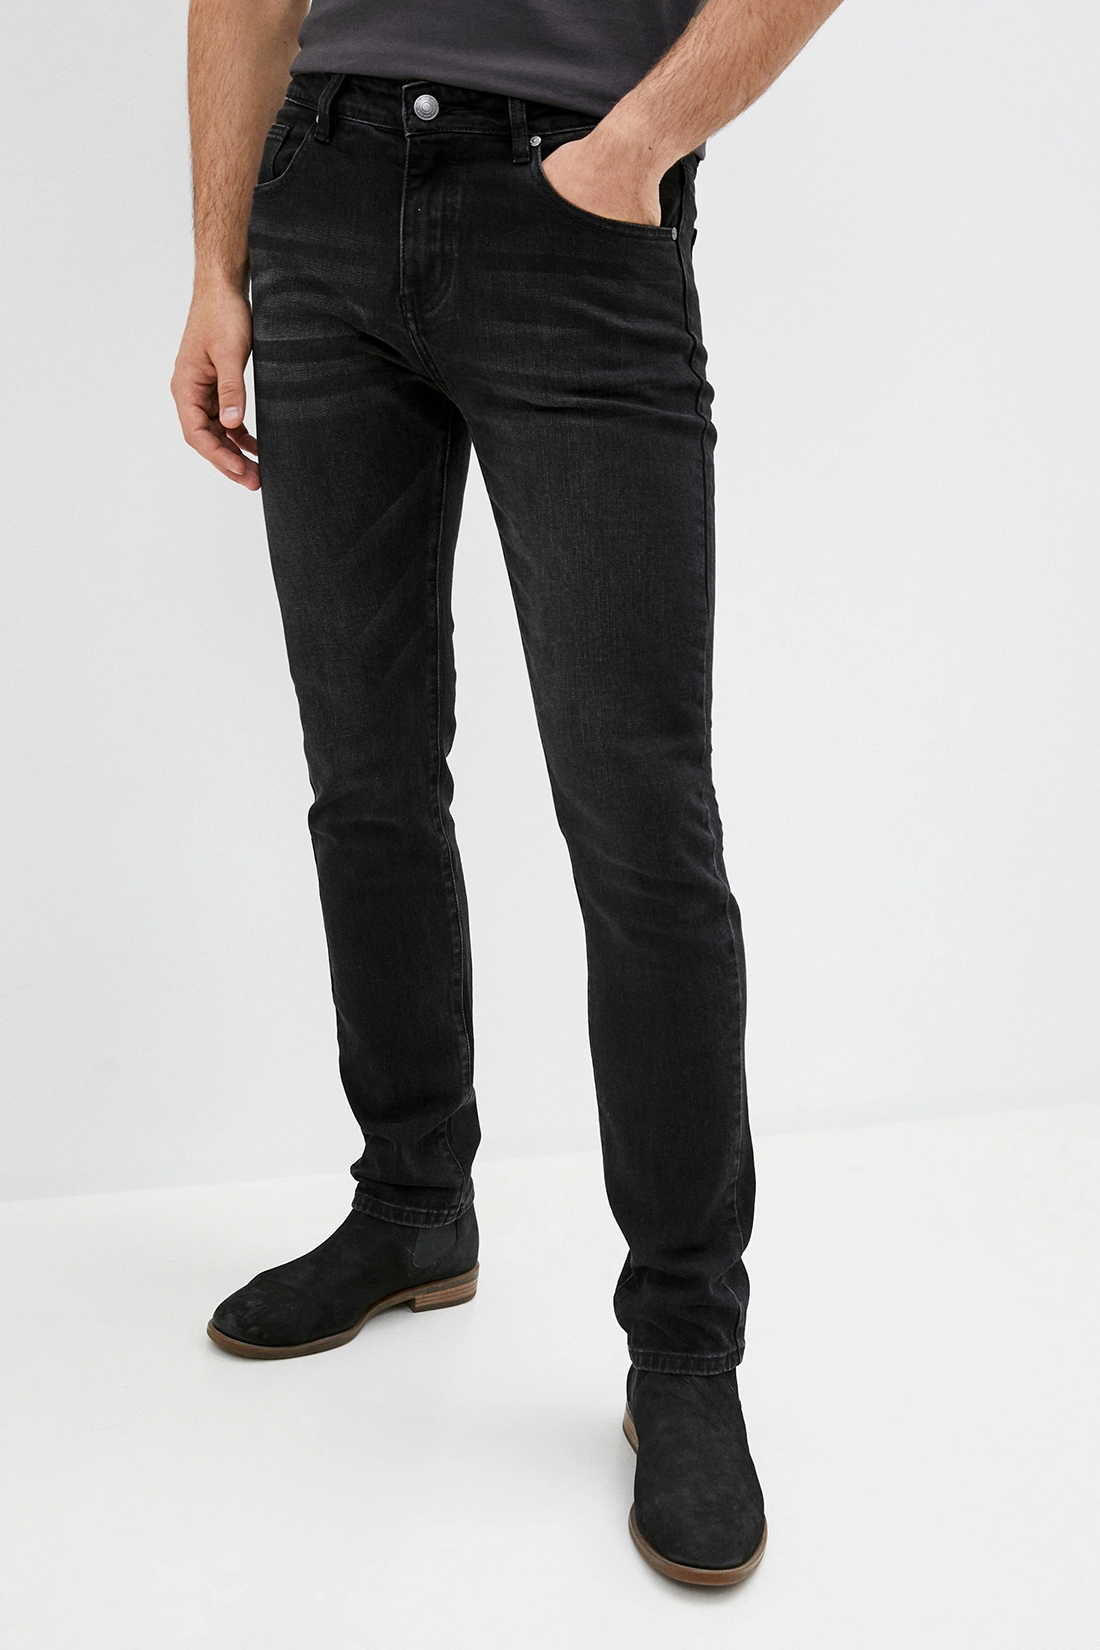 Чёрные джинсы (арт. baon B800503), размер 36, цвет black denim#черный Чёрные джинсы (арт. baon B800503) - фото 1